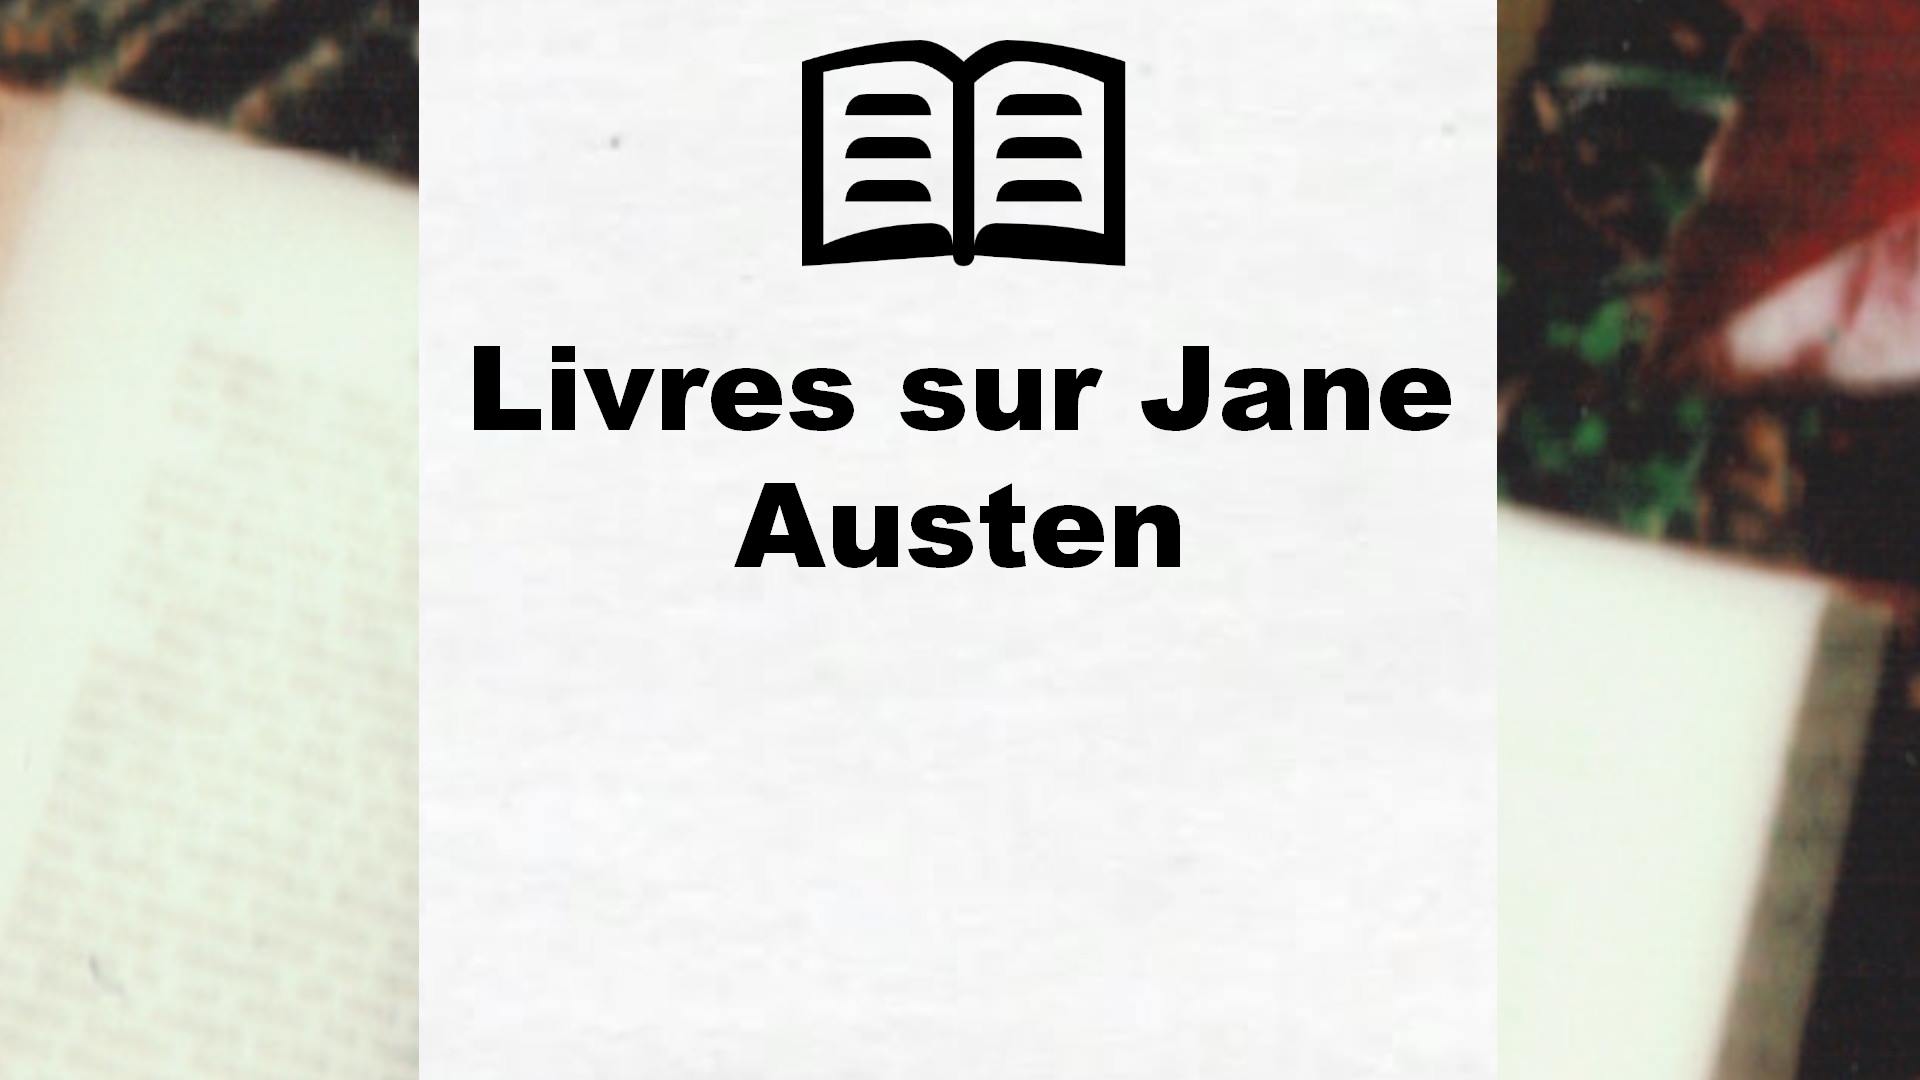 Livres sur Jane Austen